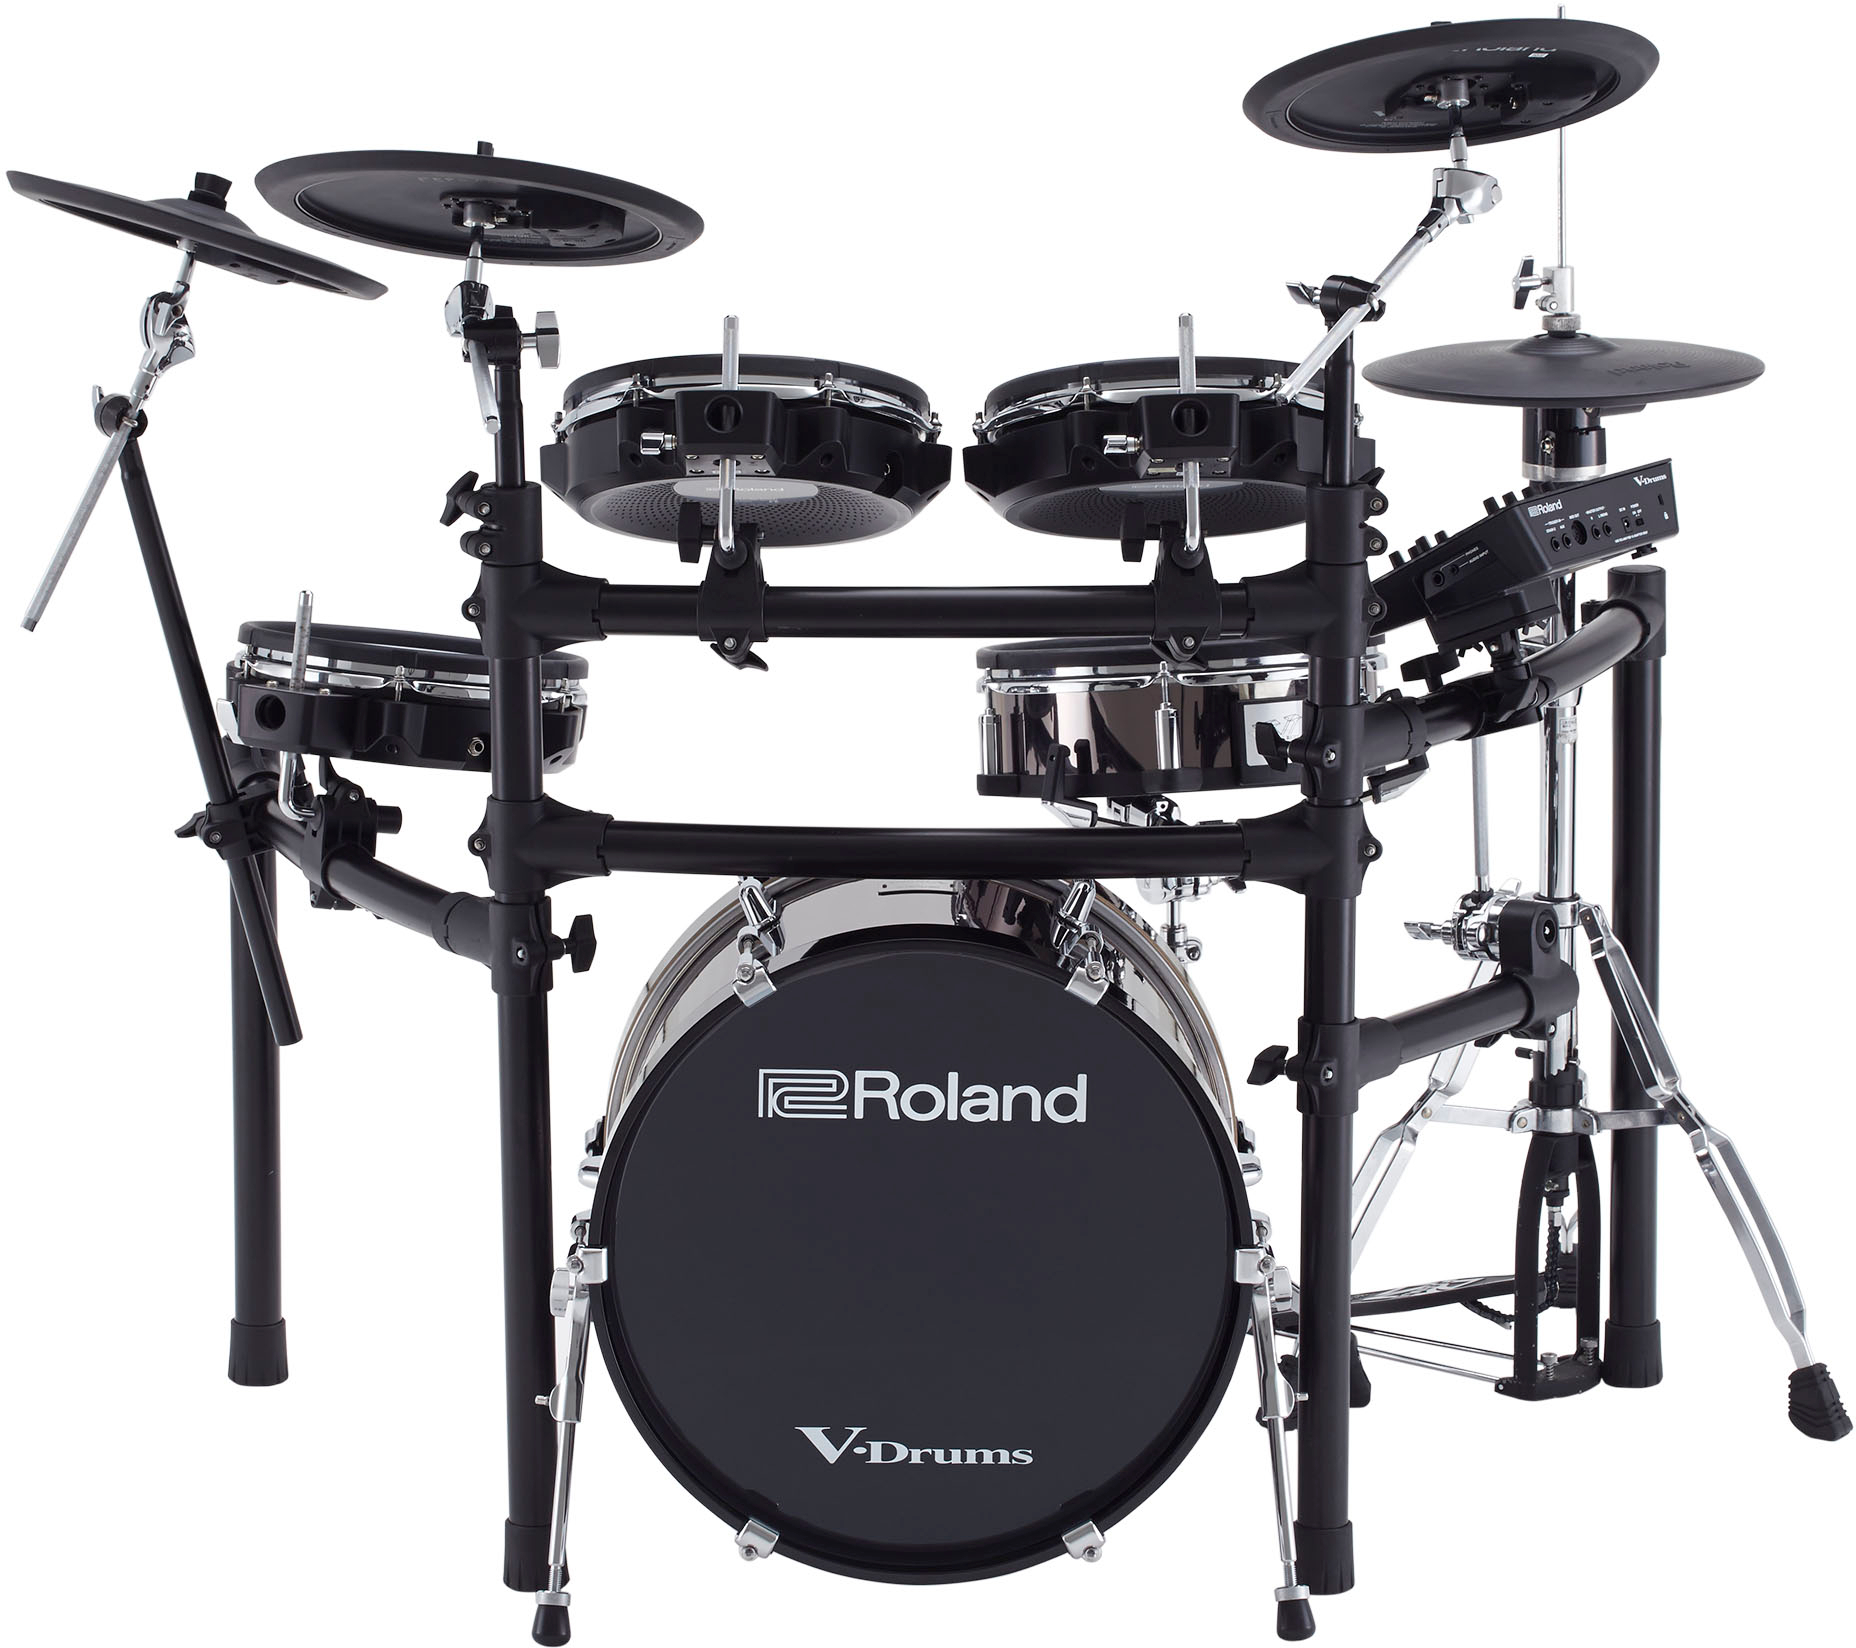 Roland Grosse Caisse V-drums Kd-180 - Komplett E-Drum Set - Variation 3